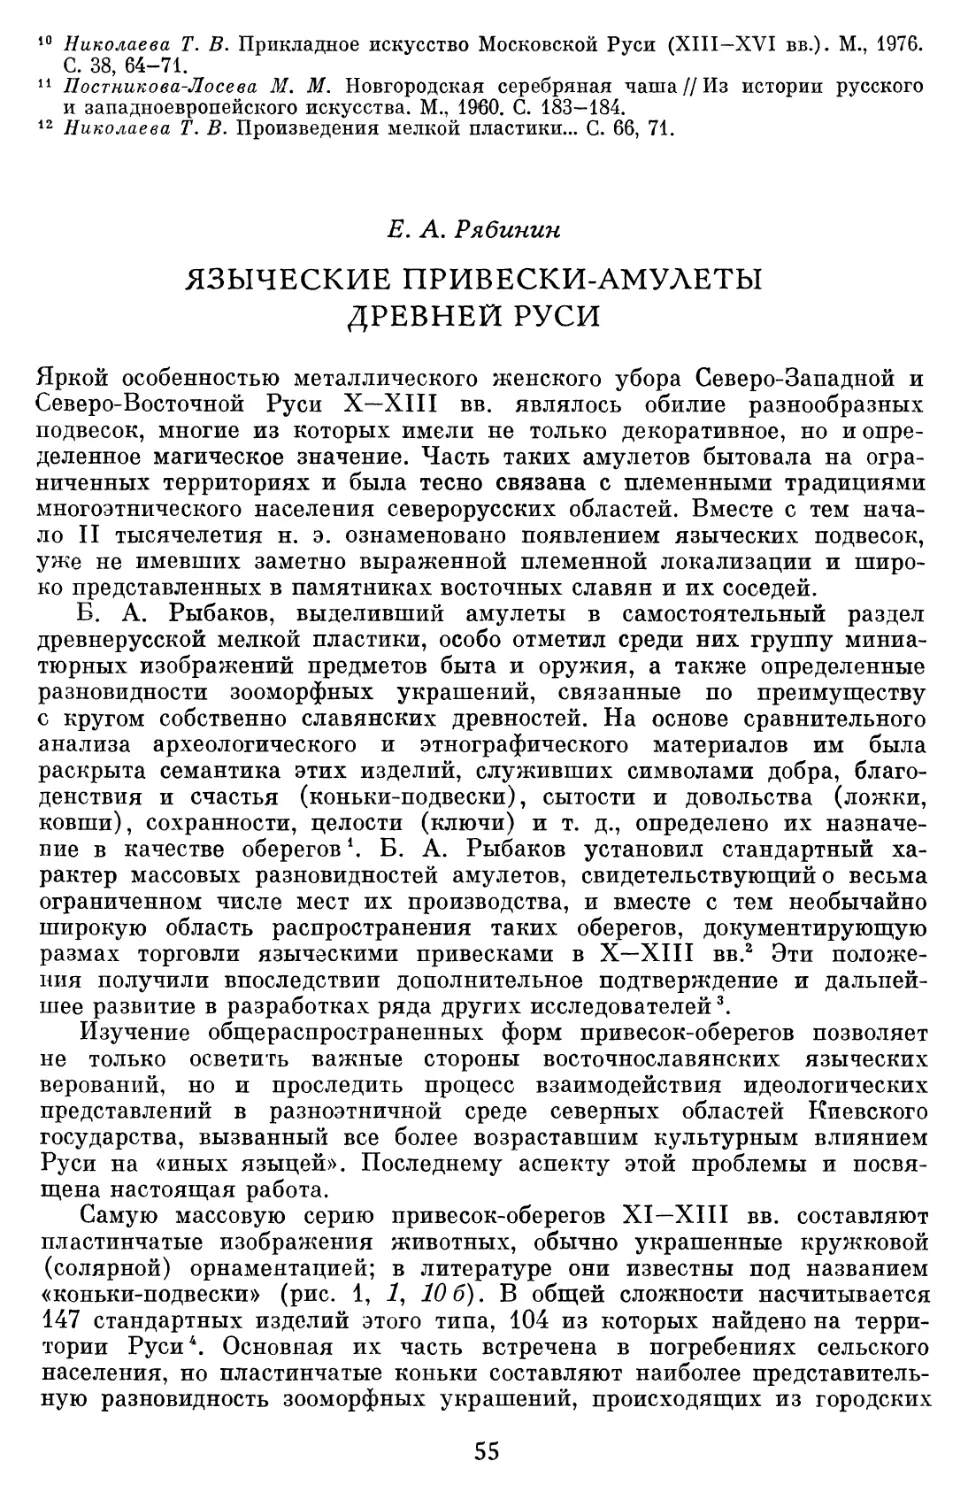 Рябинин Е.А. Языческие привески-амулеты древней Руси